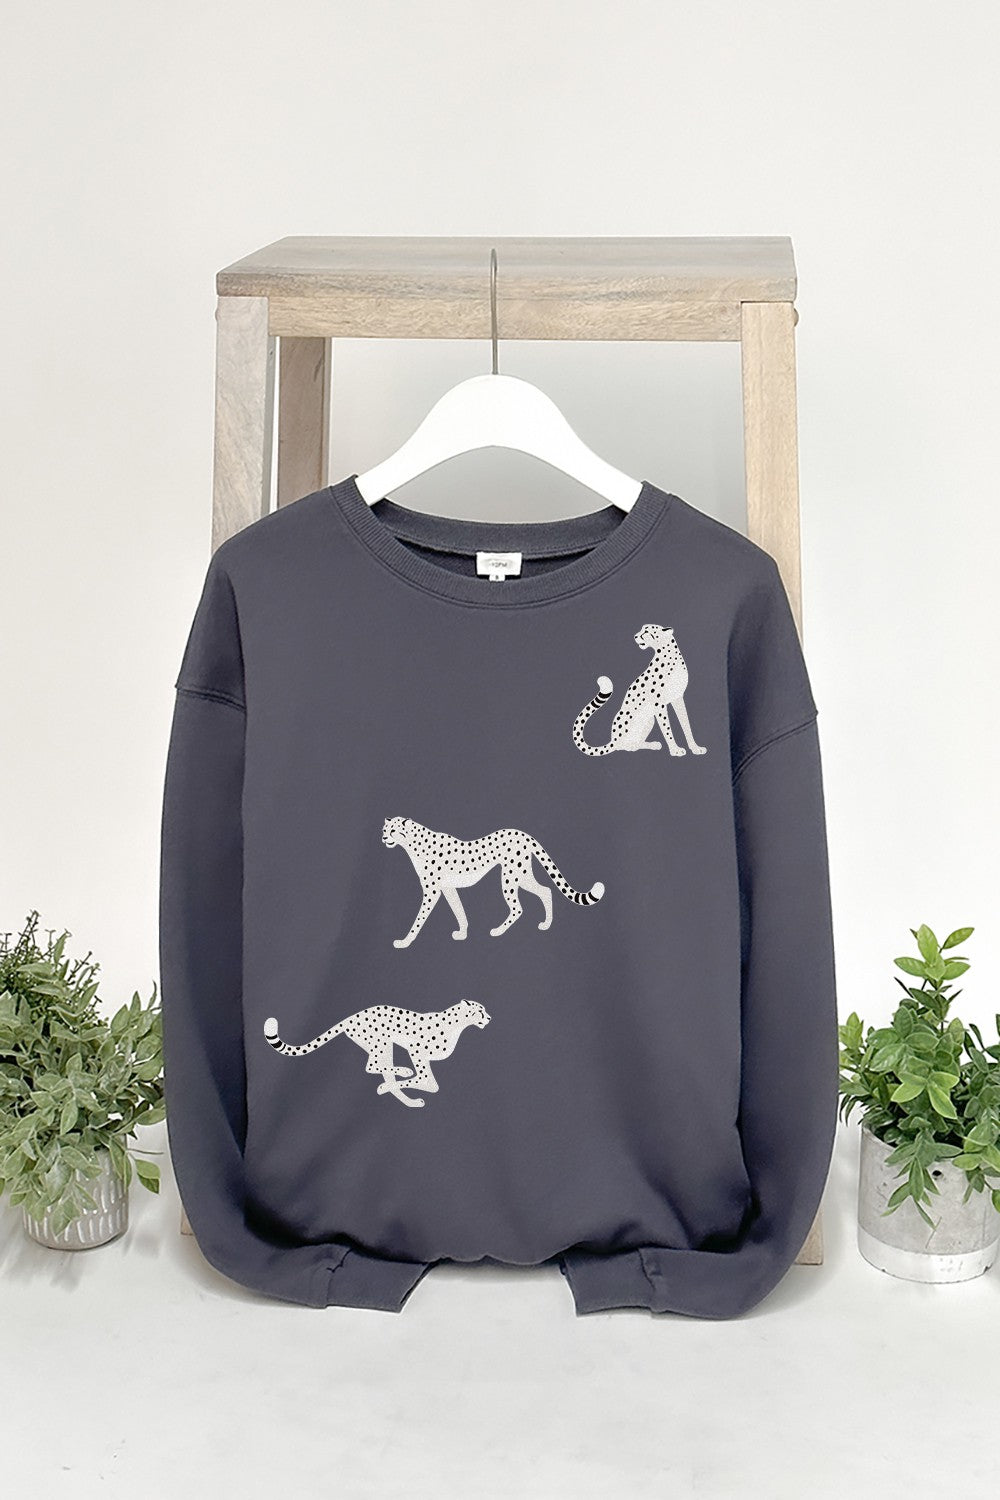 
                  
                    White Cheetahs Sweatshirt Pullover Sweater
                  
                